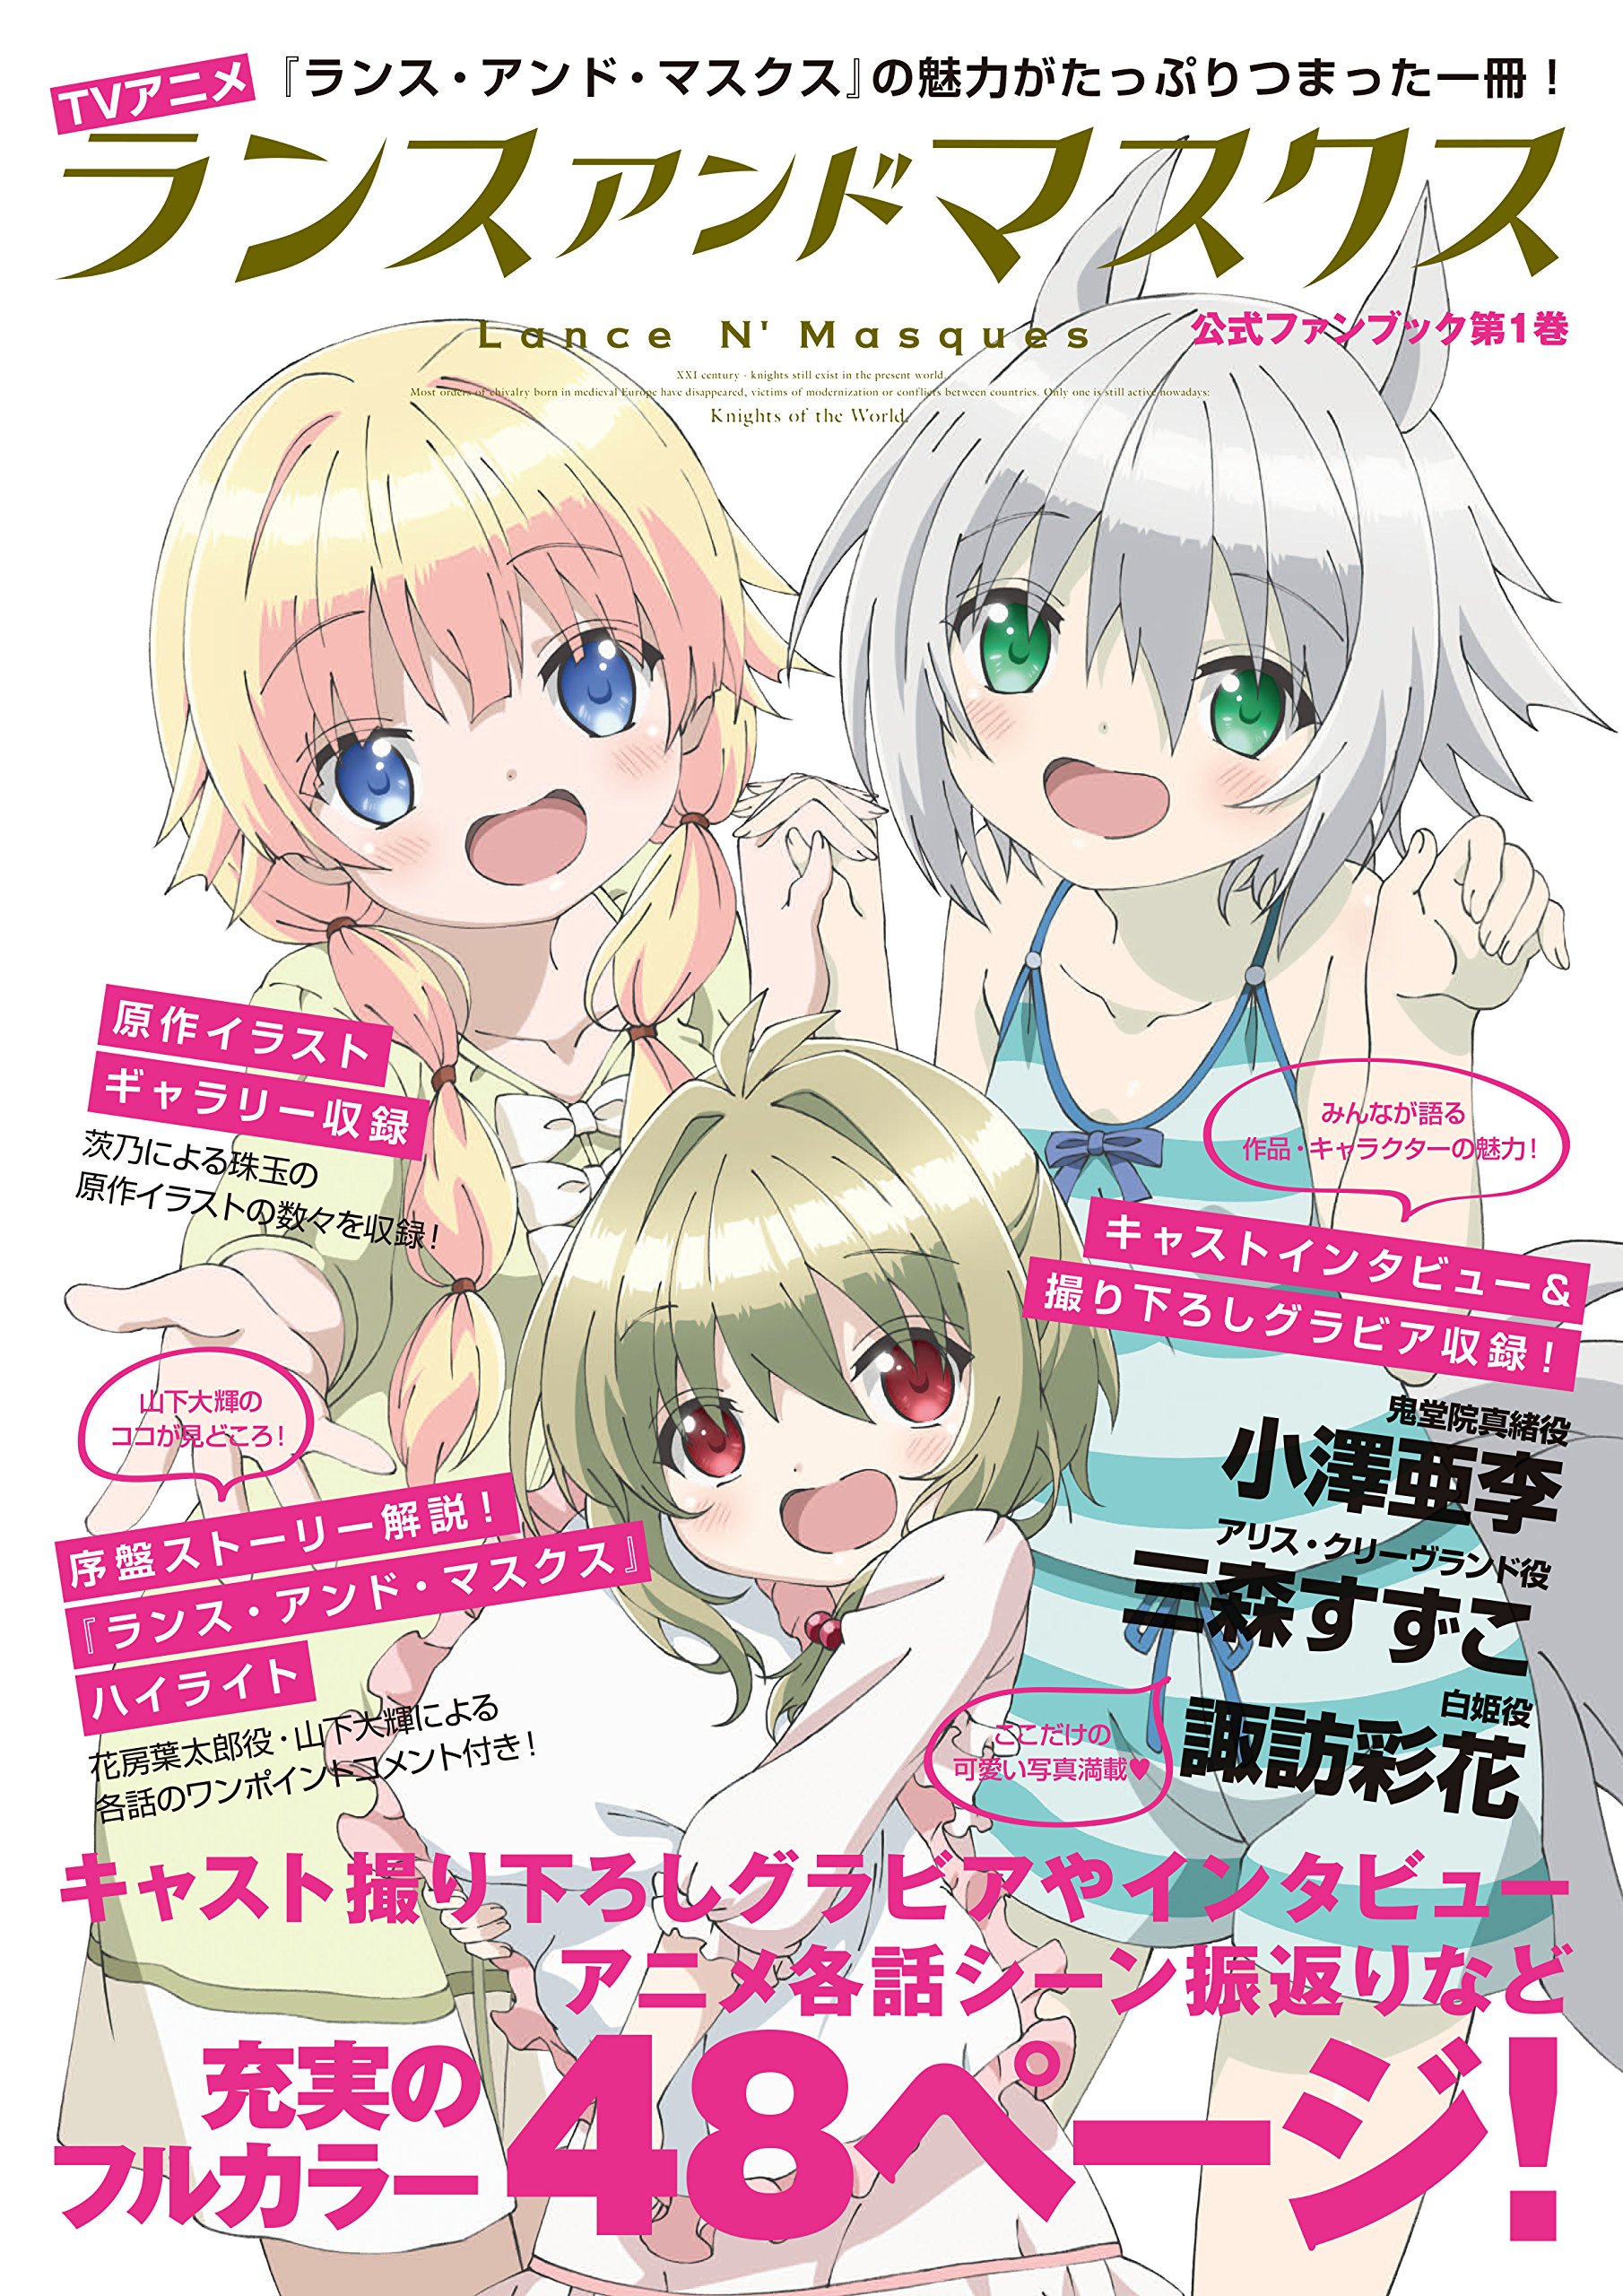 良書網 TV Anime「Lance N' Masques」公式Fanbook 第1巻 出版社: ポニーキャニオン Code/ISBN: 9784865291803